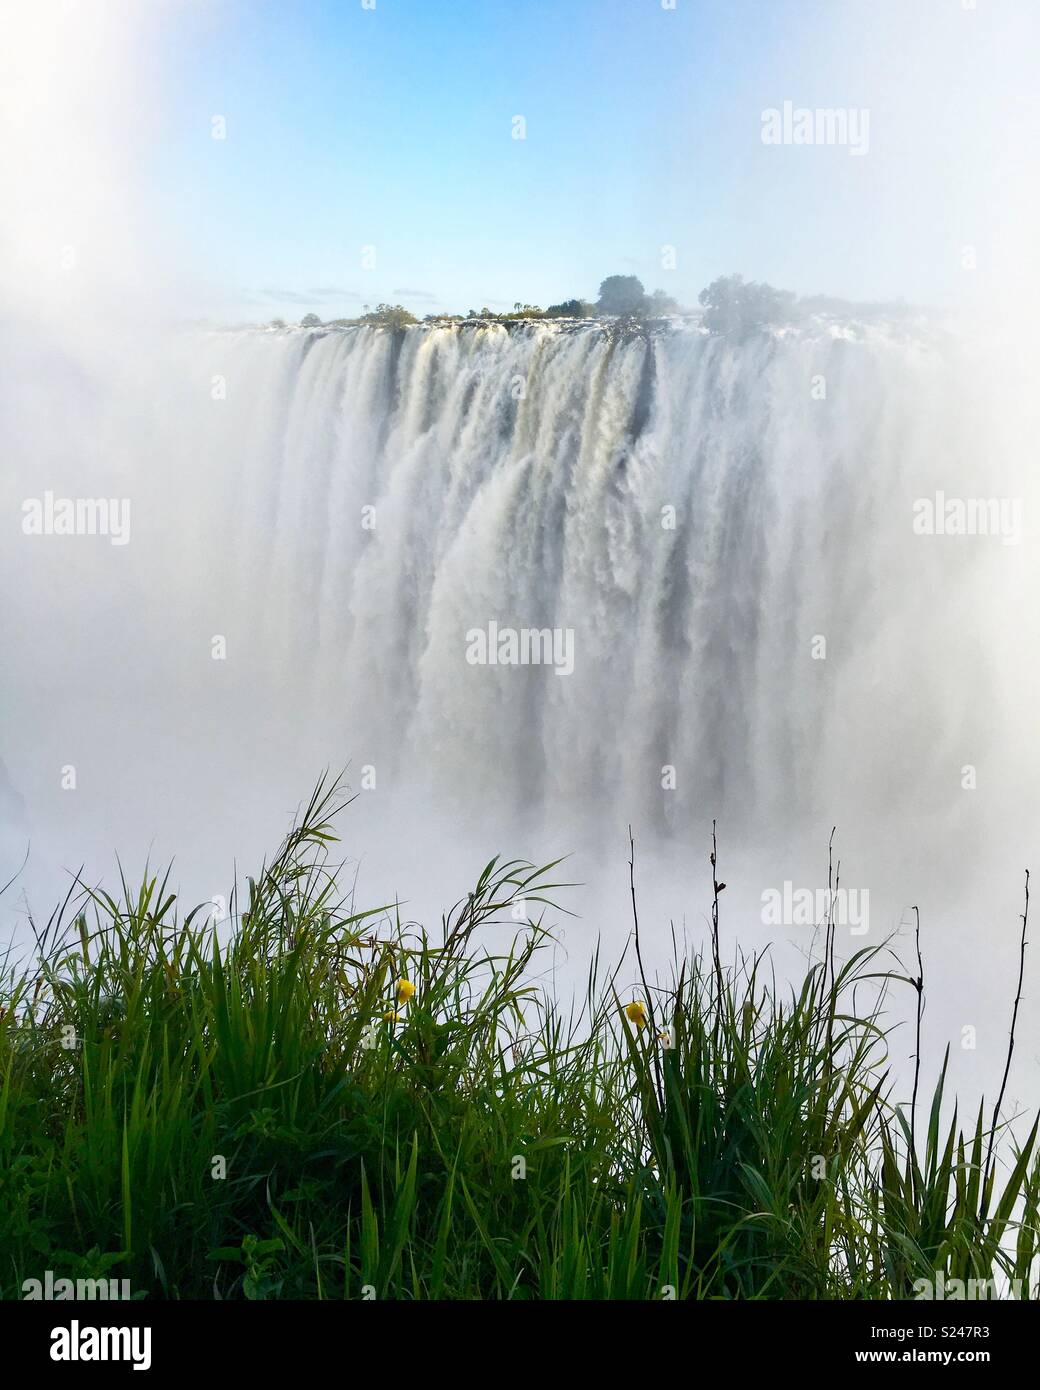 Victoria Falls on the Zambezi River on the border between Zimbabwe and Zambia. Stock Photo